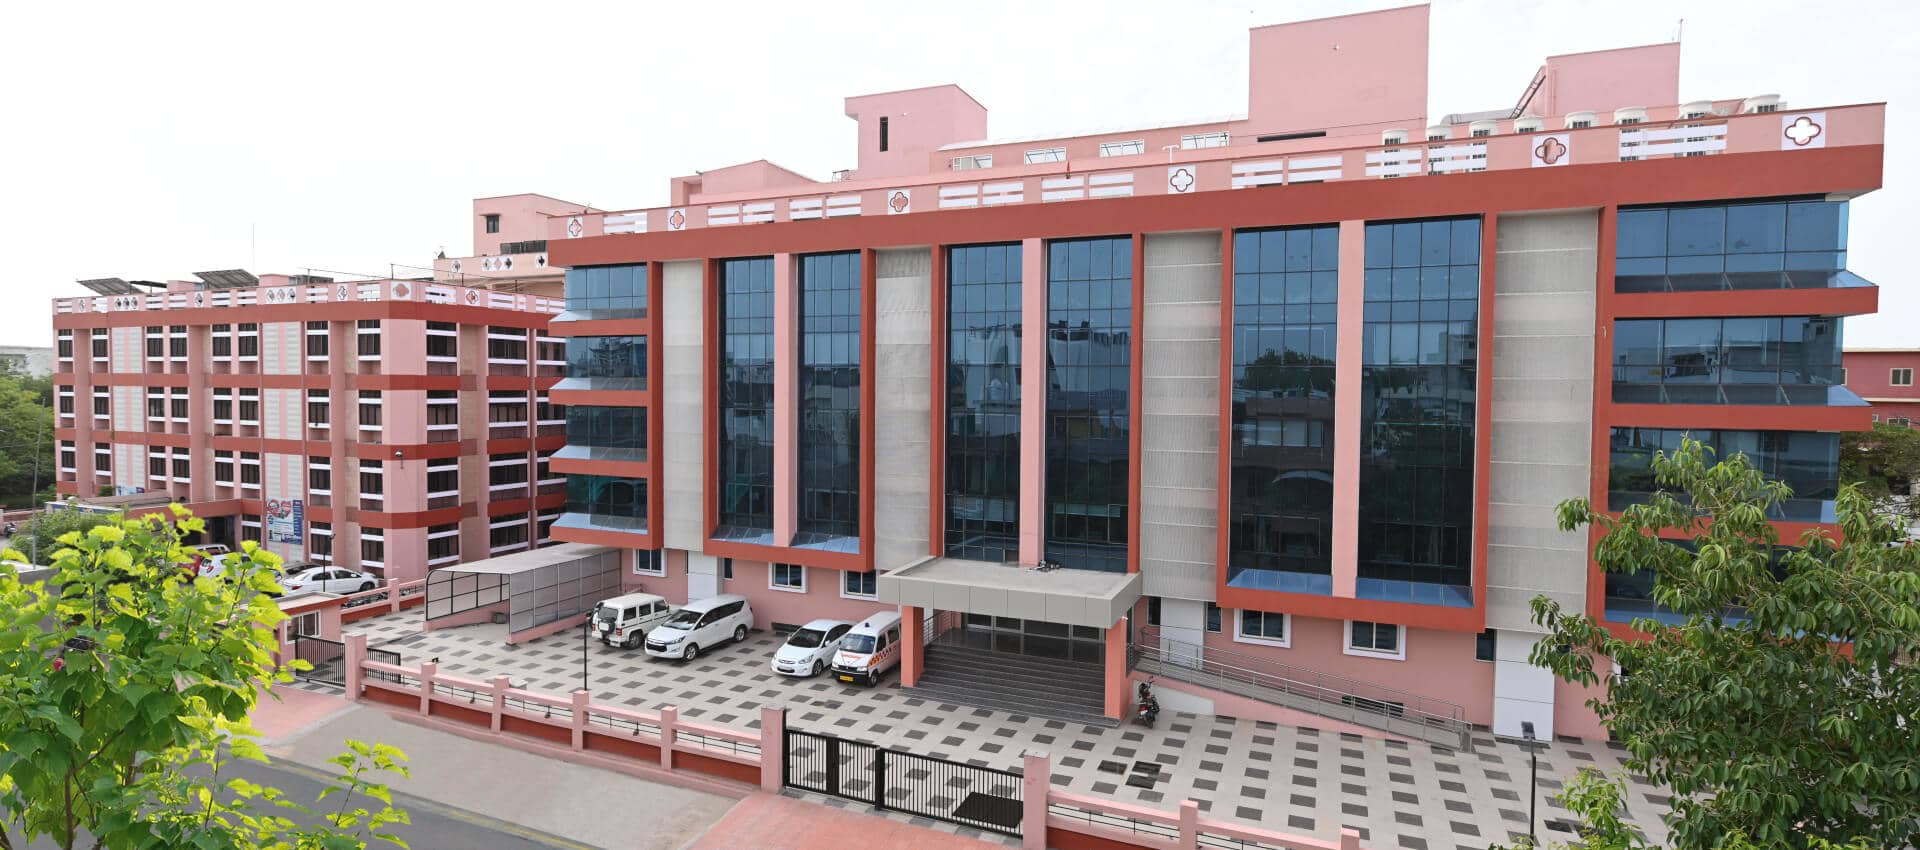 Best Hospital in Jaipur - Saket Hospital